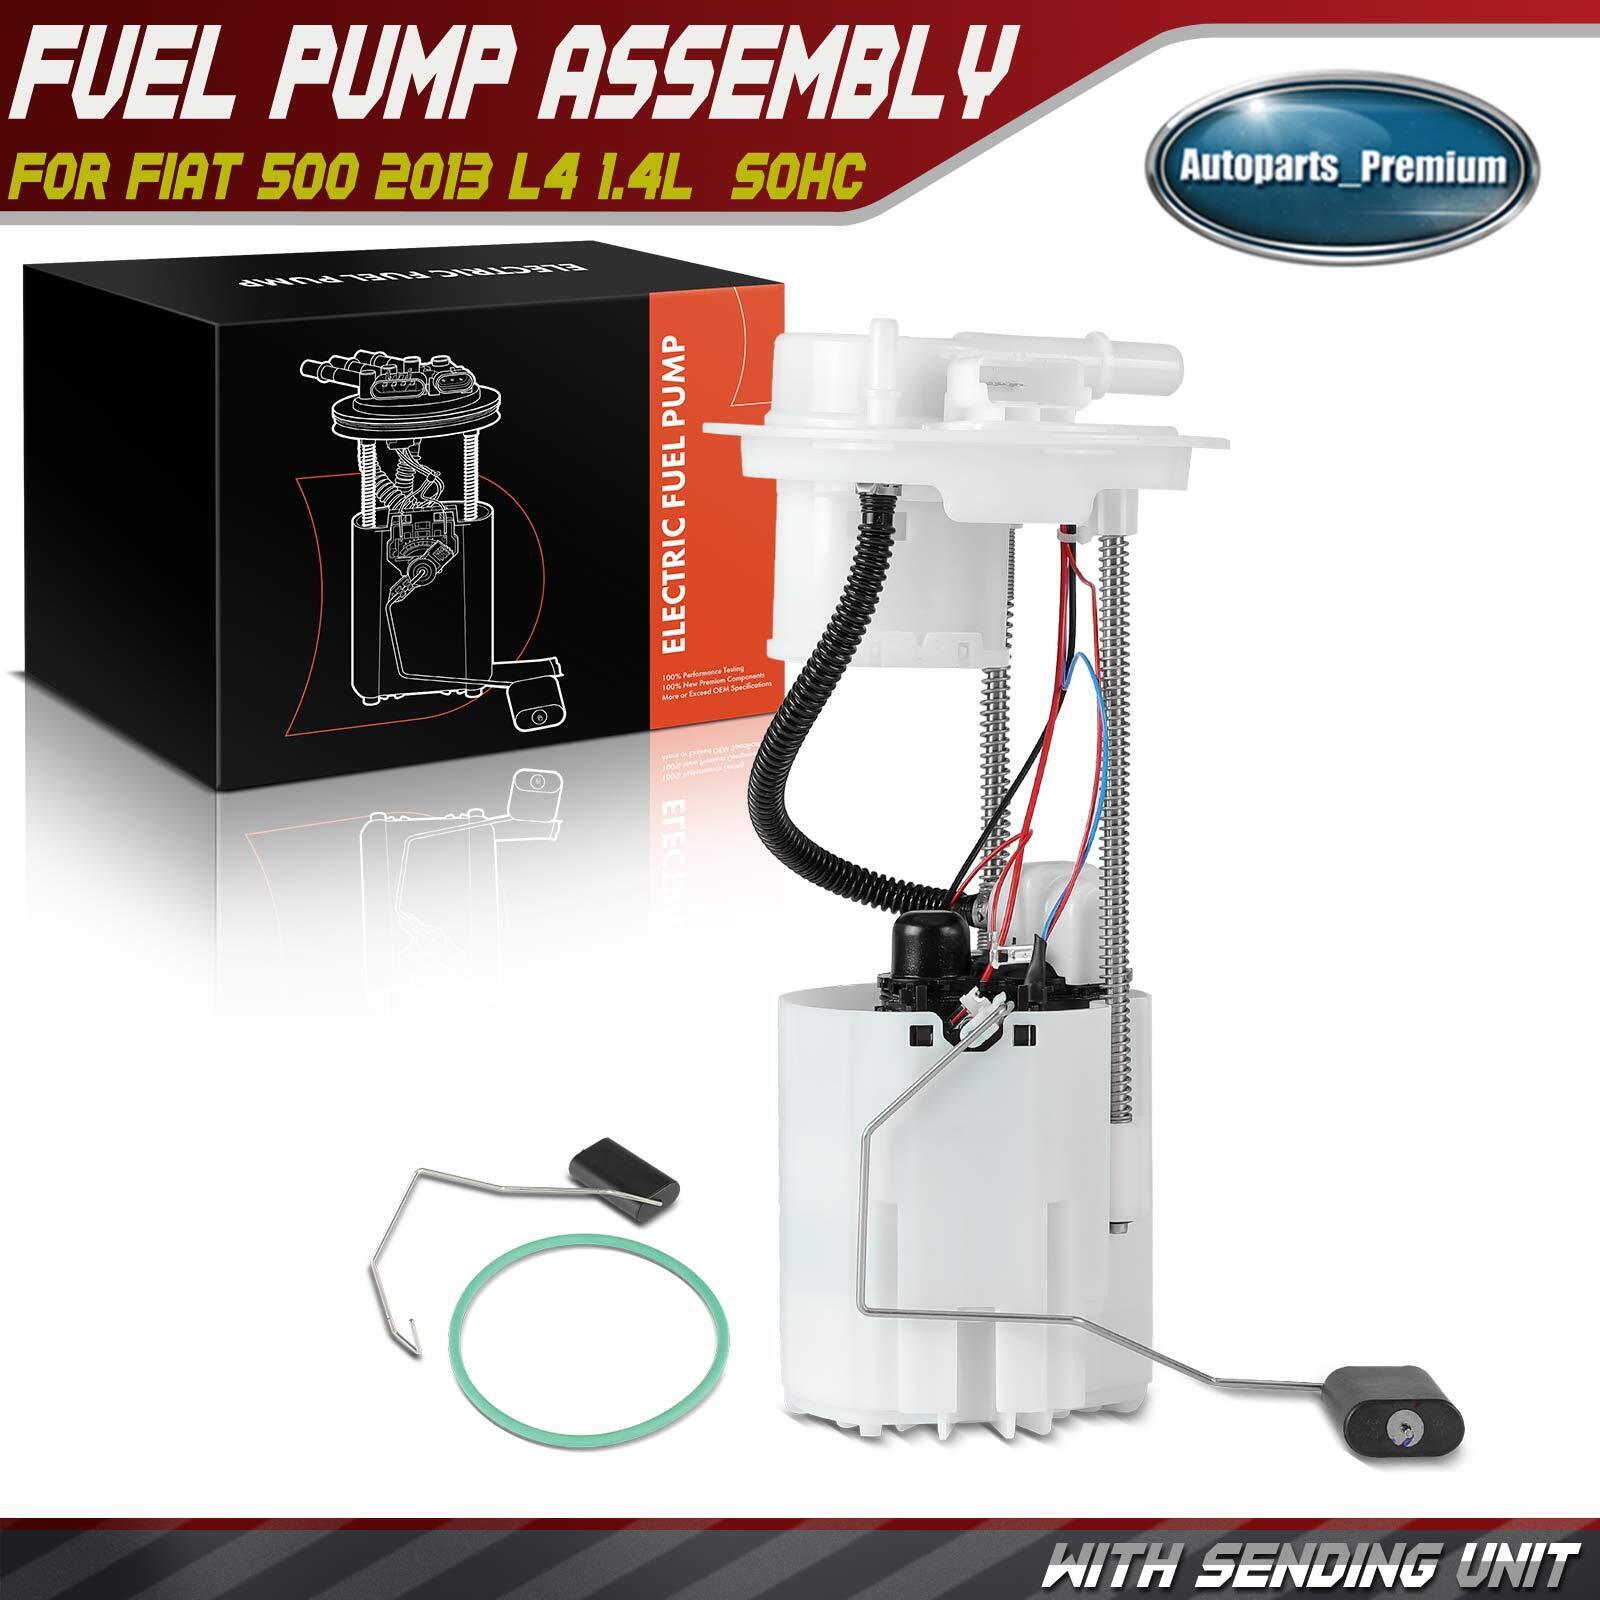 New Fuel Pump Module Assembly for Fiat 500 2013 L4 1.4L GAS SOHC 